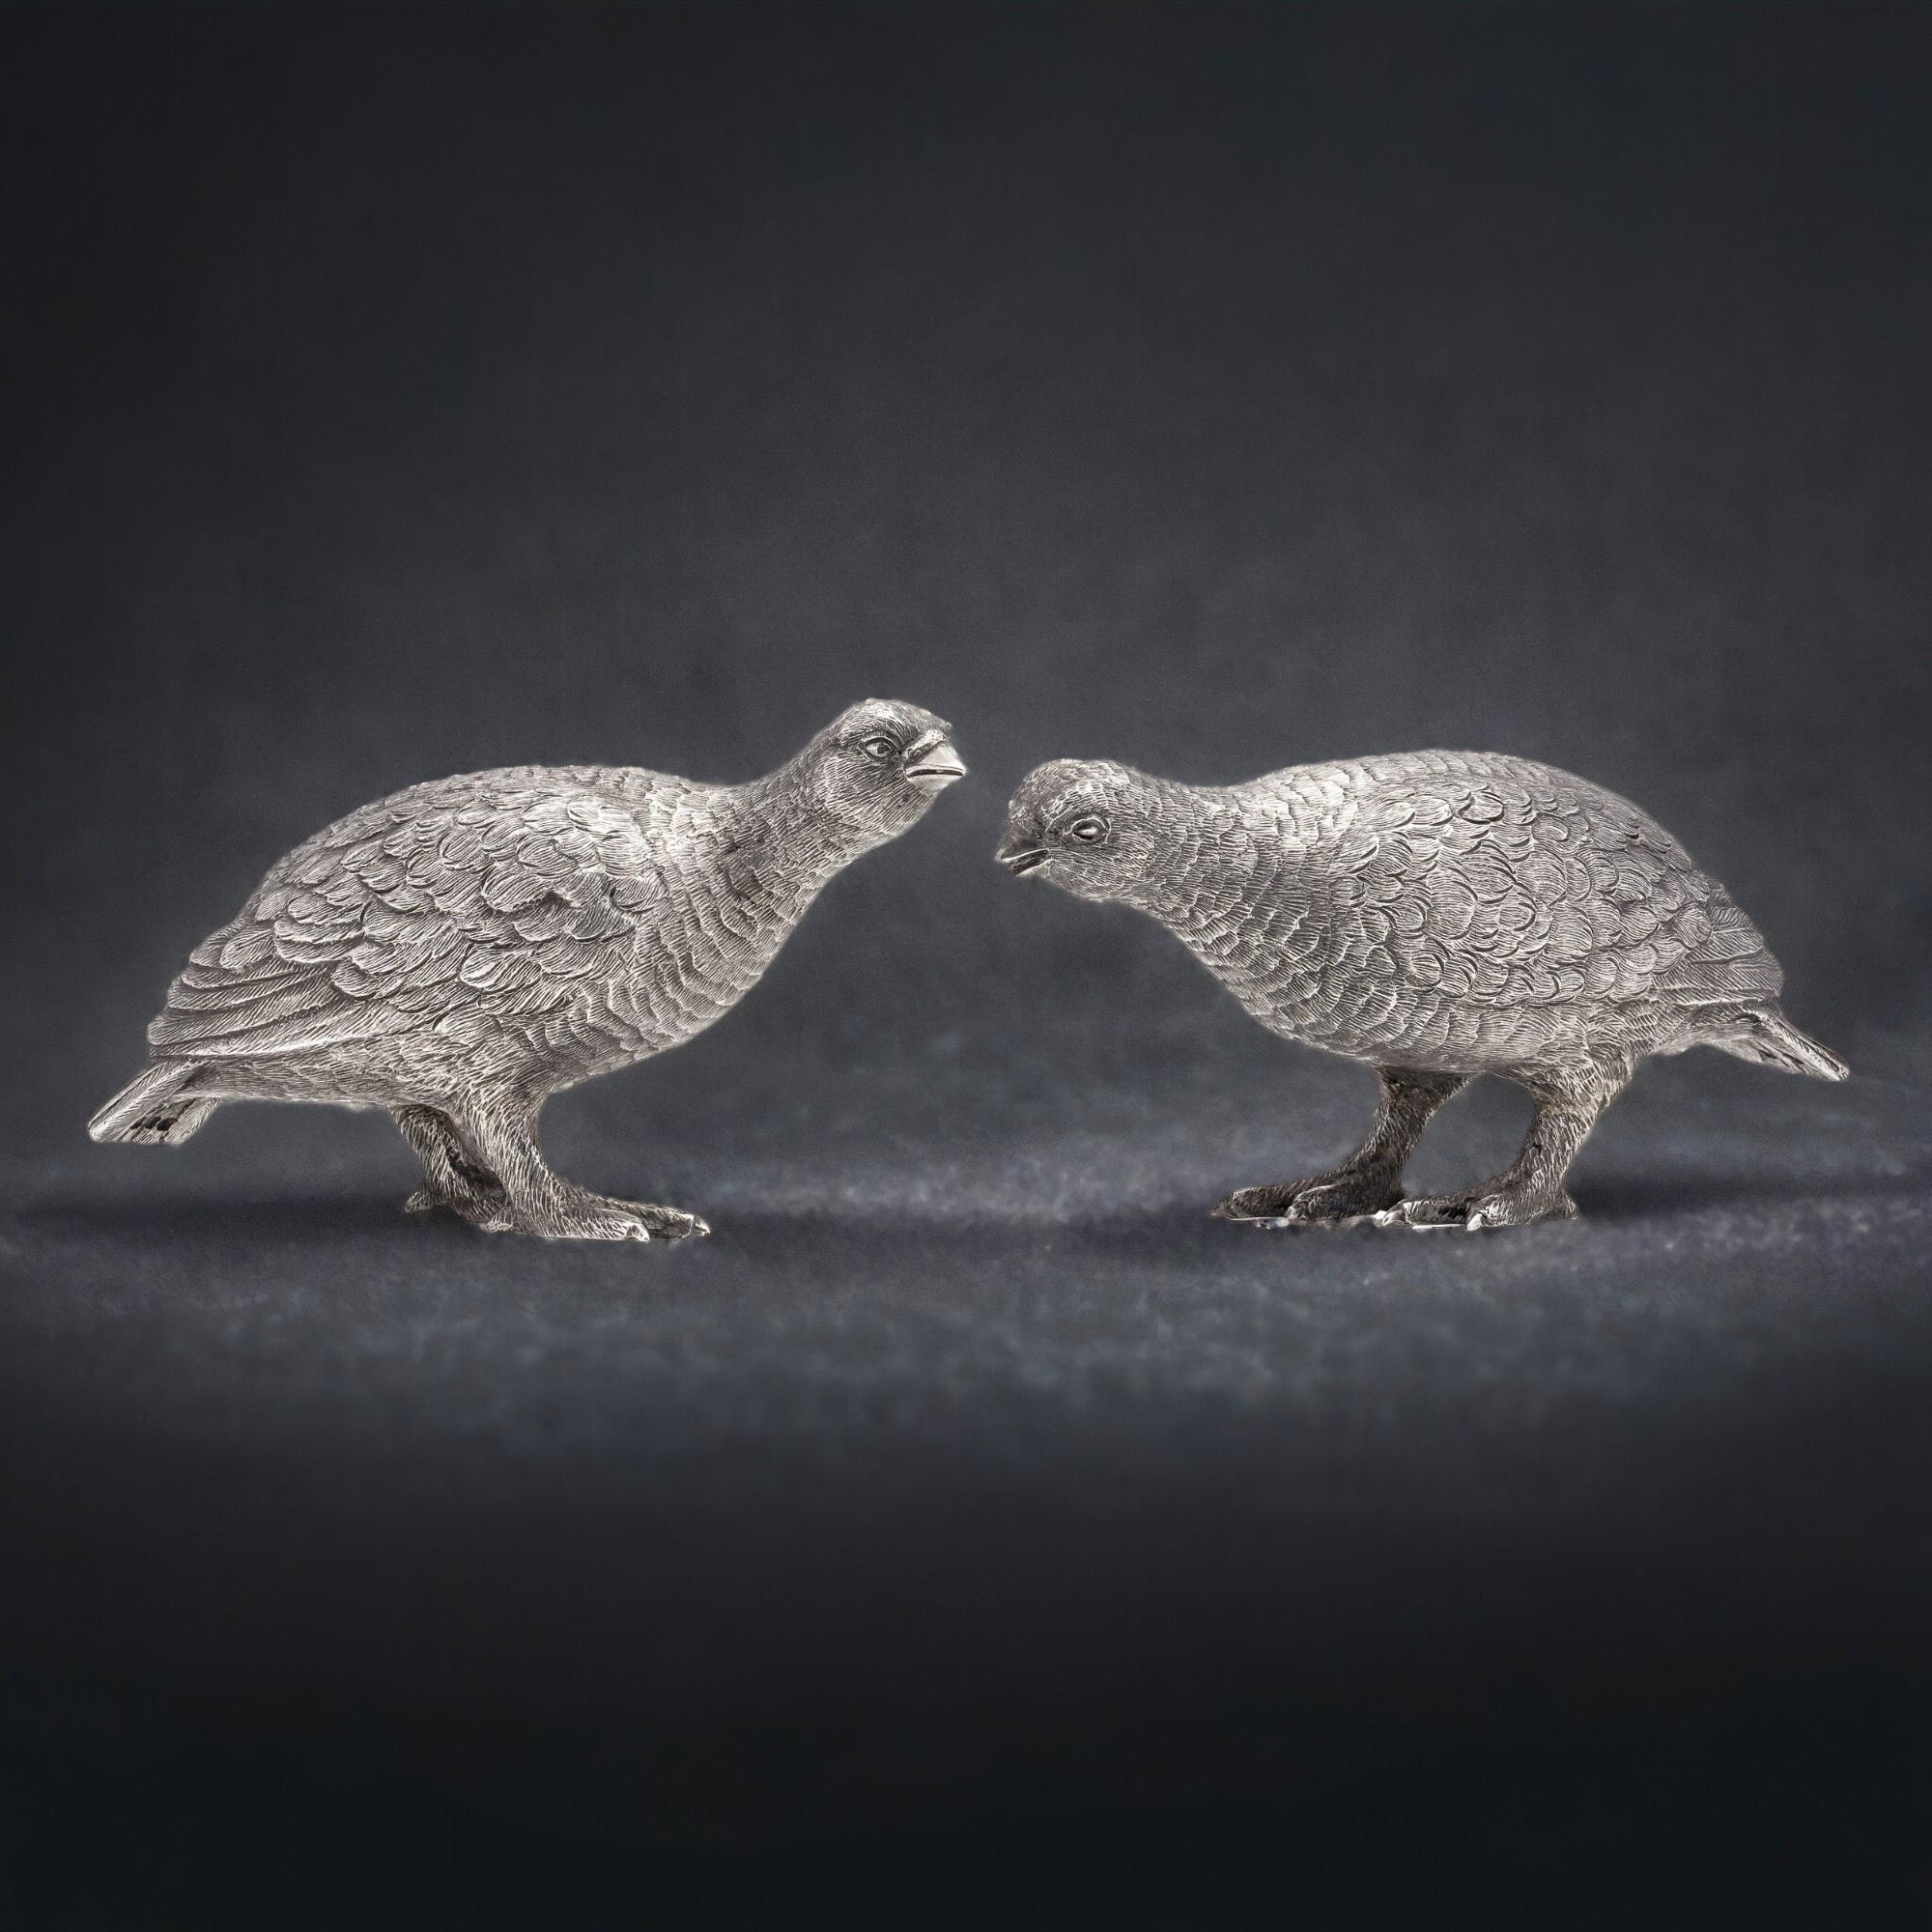 Vintage Sterling Silber Paar Schneehuhn Vogel Modelle. 
Hergestellt in England, London, 1966
Hersteller: William Comyns & Sons Ltd. 
Vollständig gepunzt.

Abmessungen:
1. Vogel Größe: Länge x Breite x Höhe: 13 x 4,3 x 6,5 cm 
2. Vogel Größe: Länge x